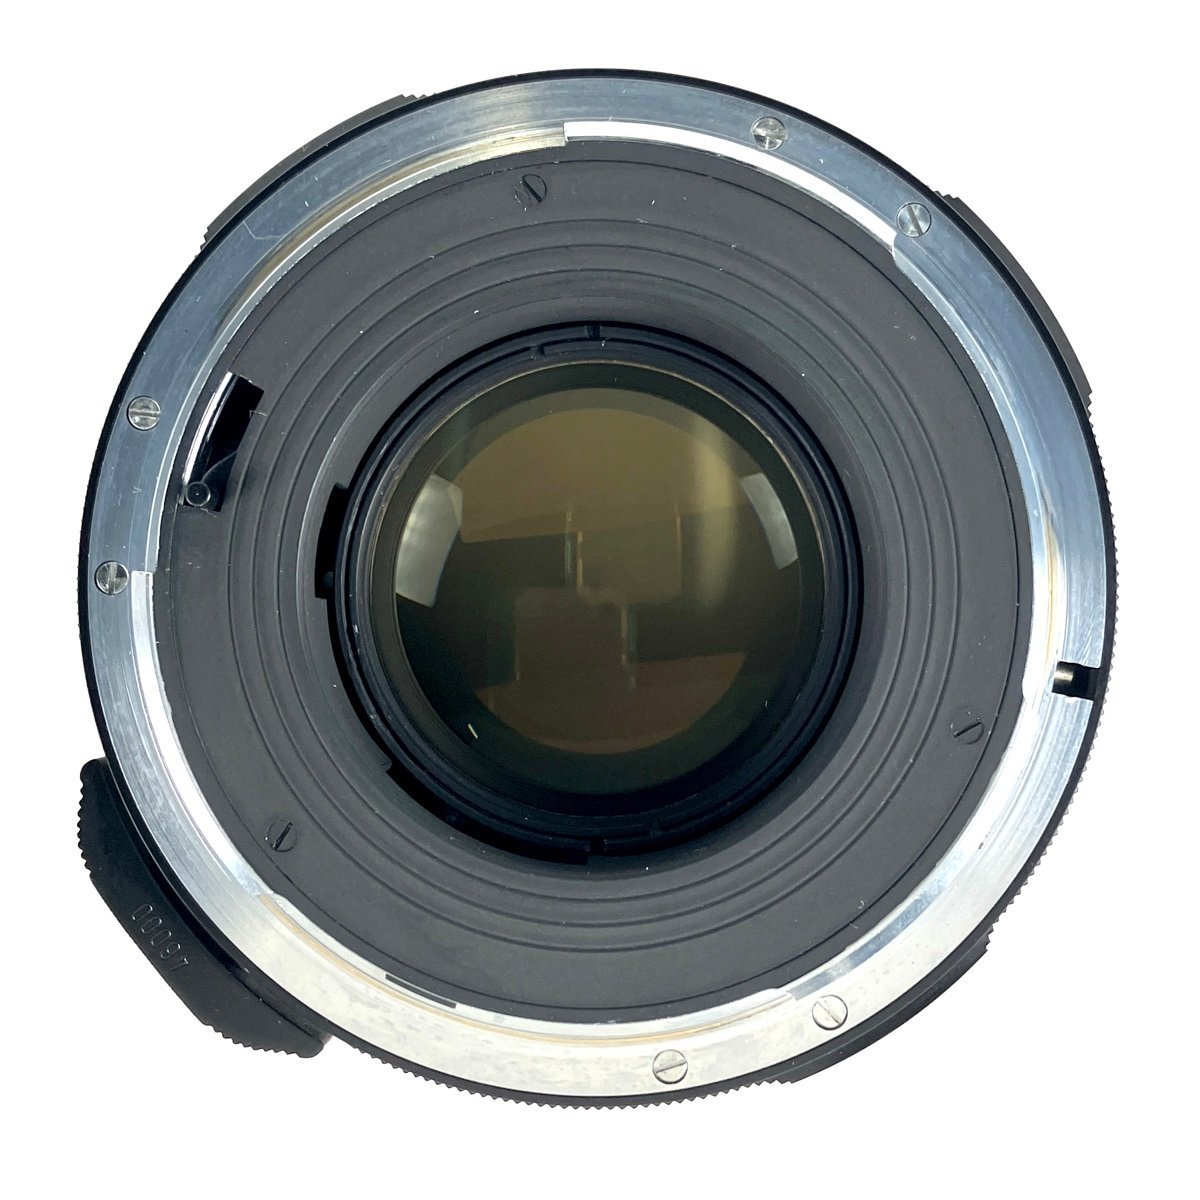 ペンタックス PENTAX 6x7 アイレベル TAKUMAR 105mm F2.4 67 バケペン 中判カメラ 【中古】 